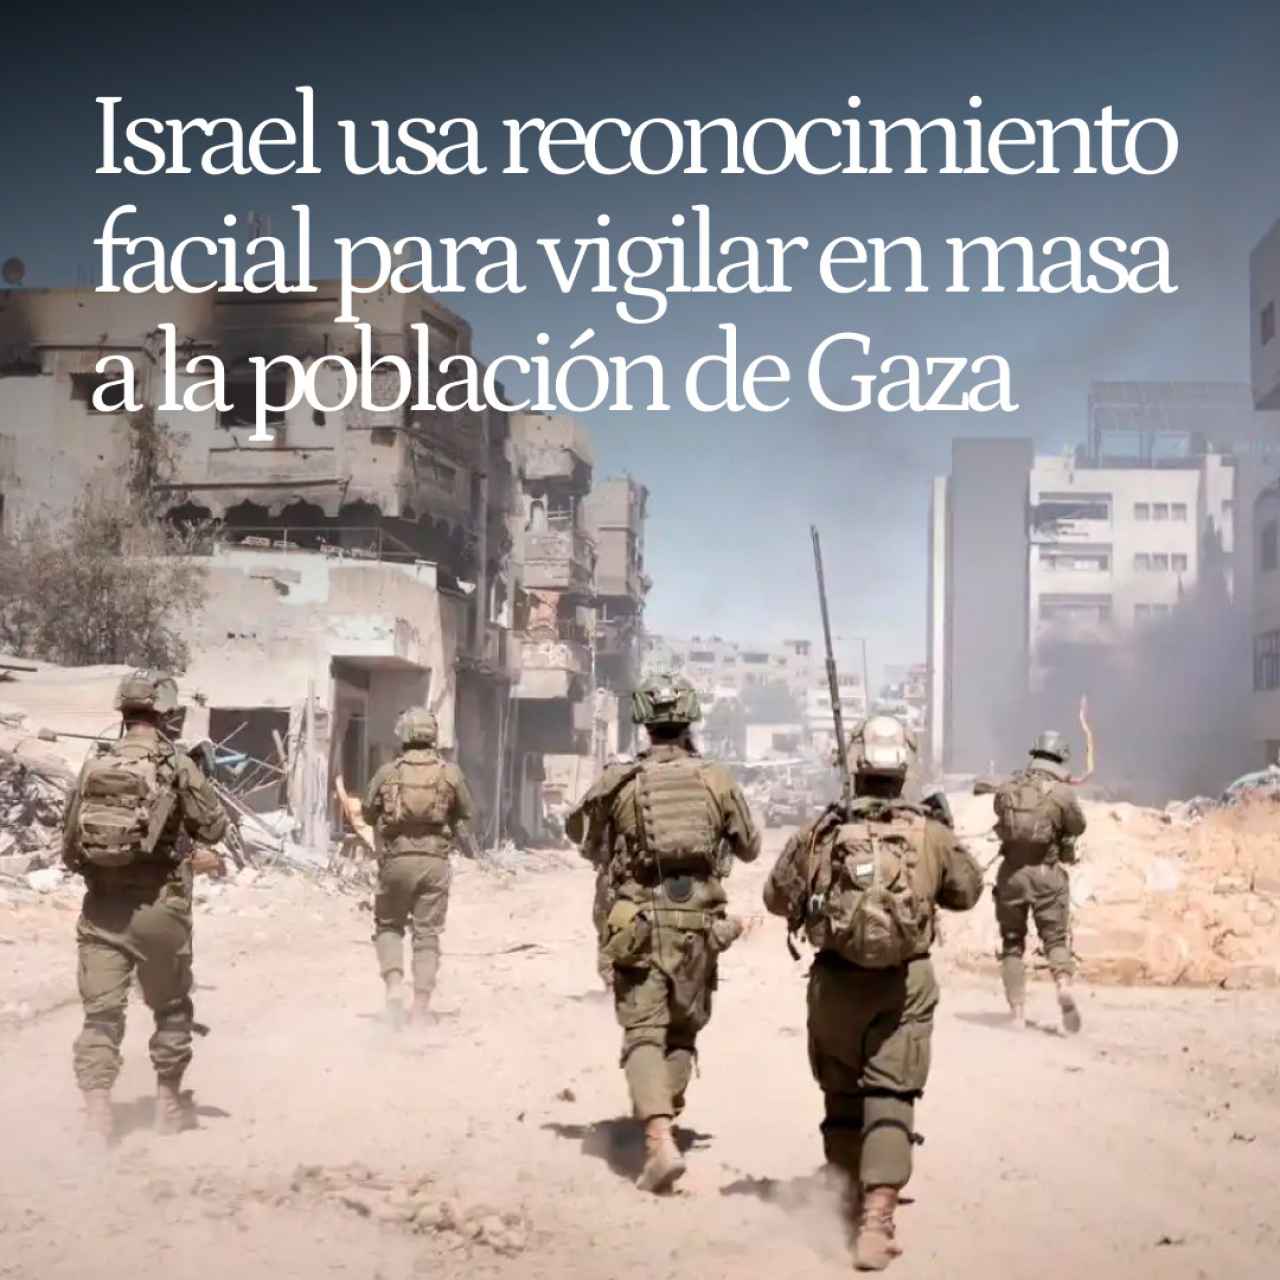 Hacer la guerra por fotos: Israel usa reconocimiento facial para vigilar en masa a la población de Gaza